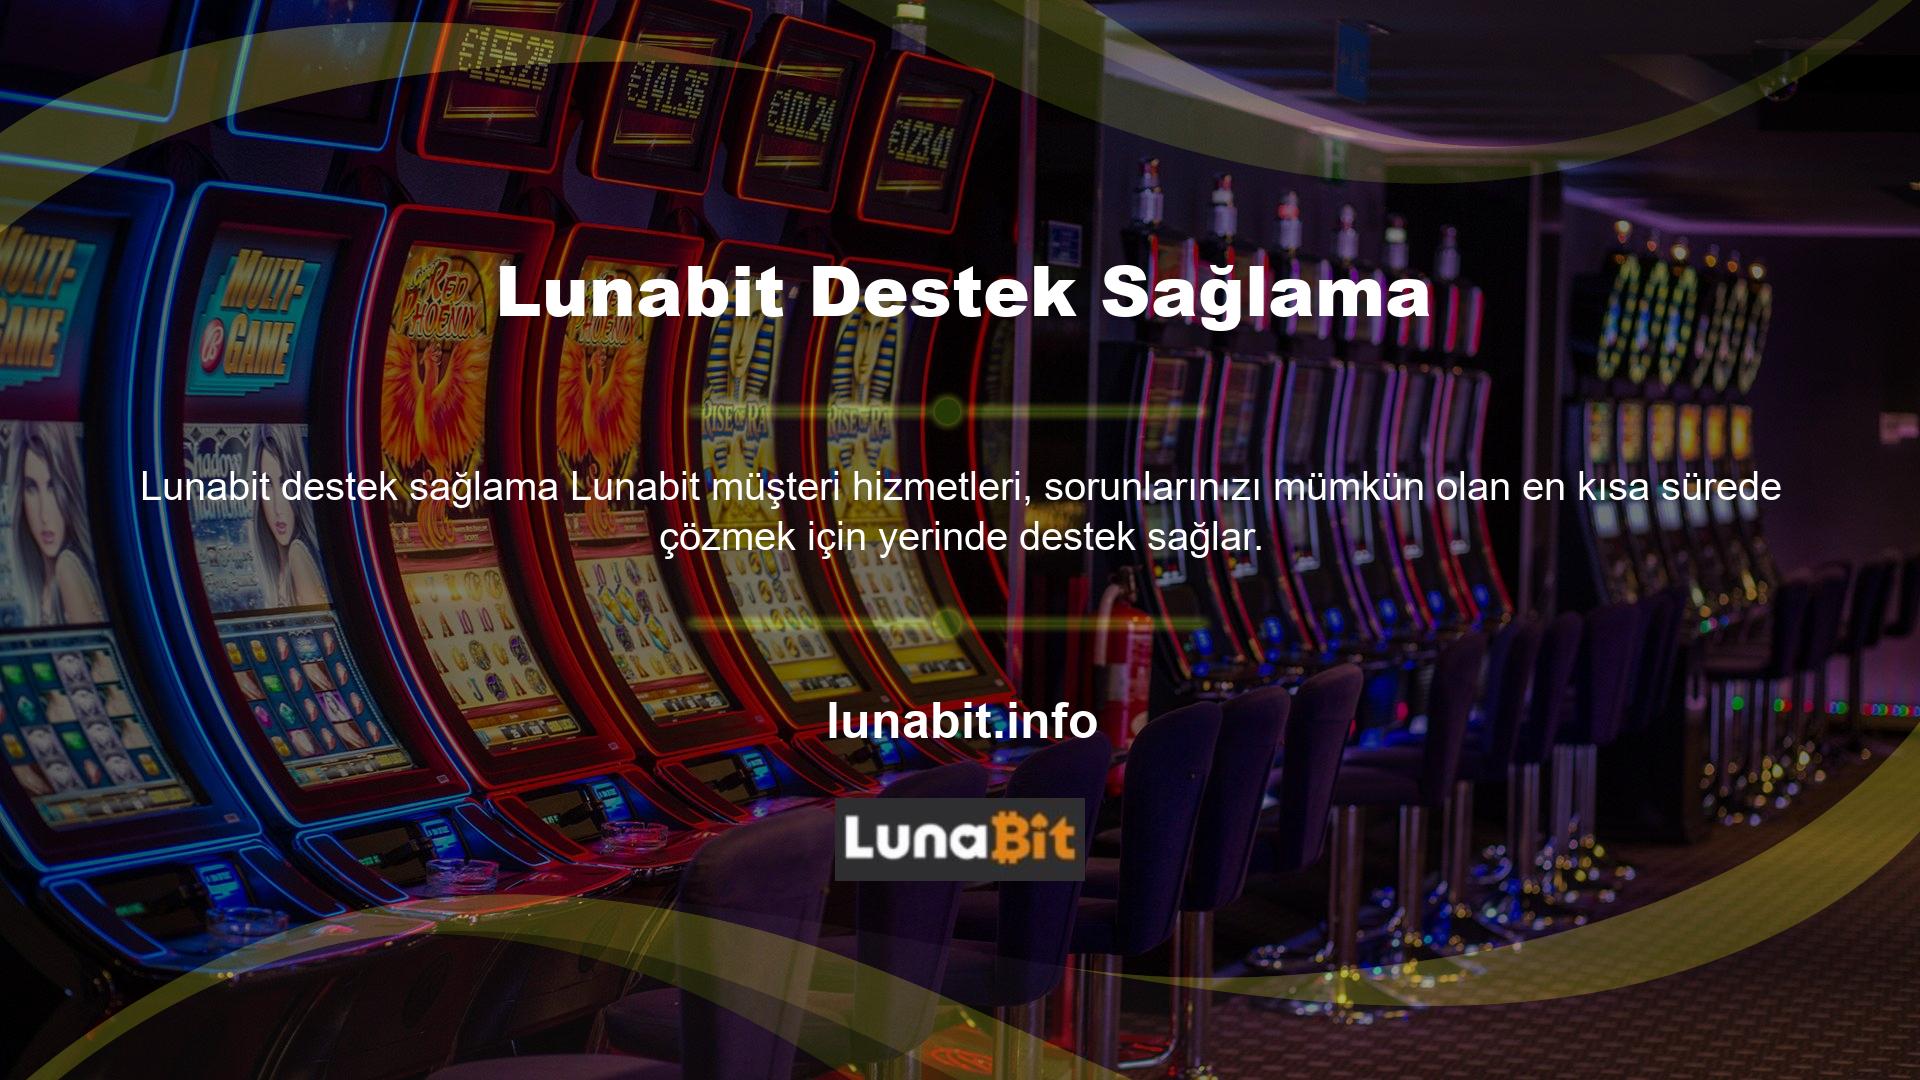 Lunabit bu alanda deneyimli satış temsilcileri, site üzerinden takip sürecini çok hızlı ve kolay hale getiriyor